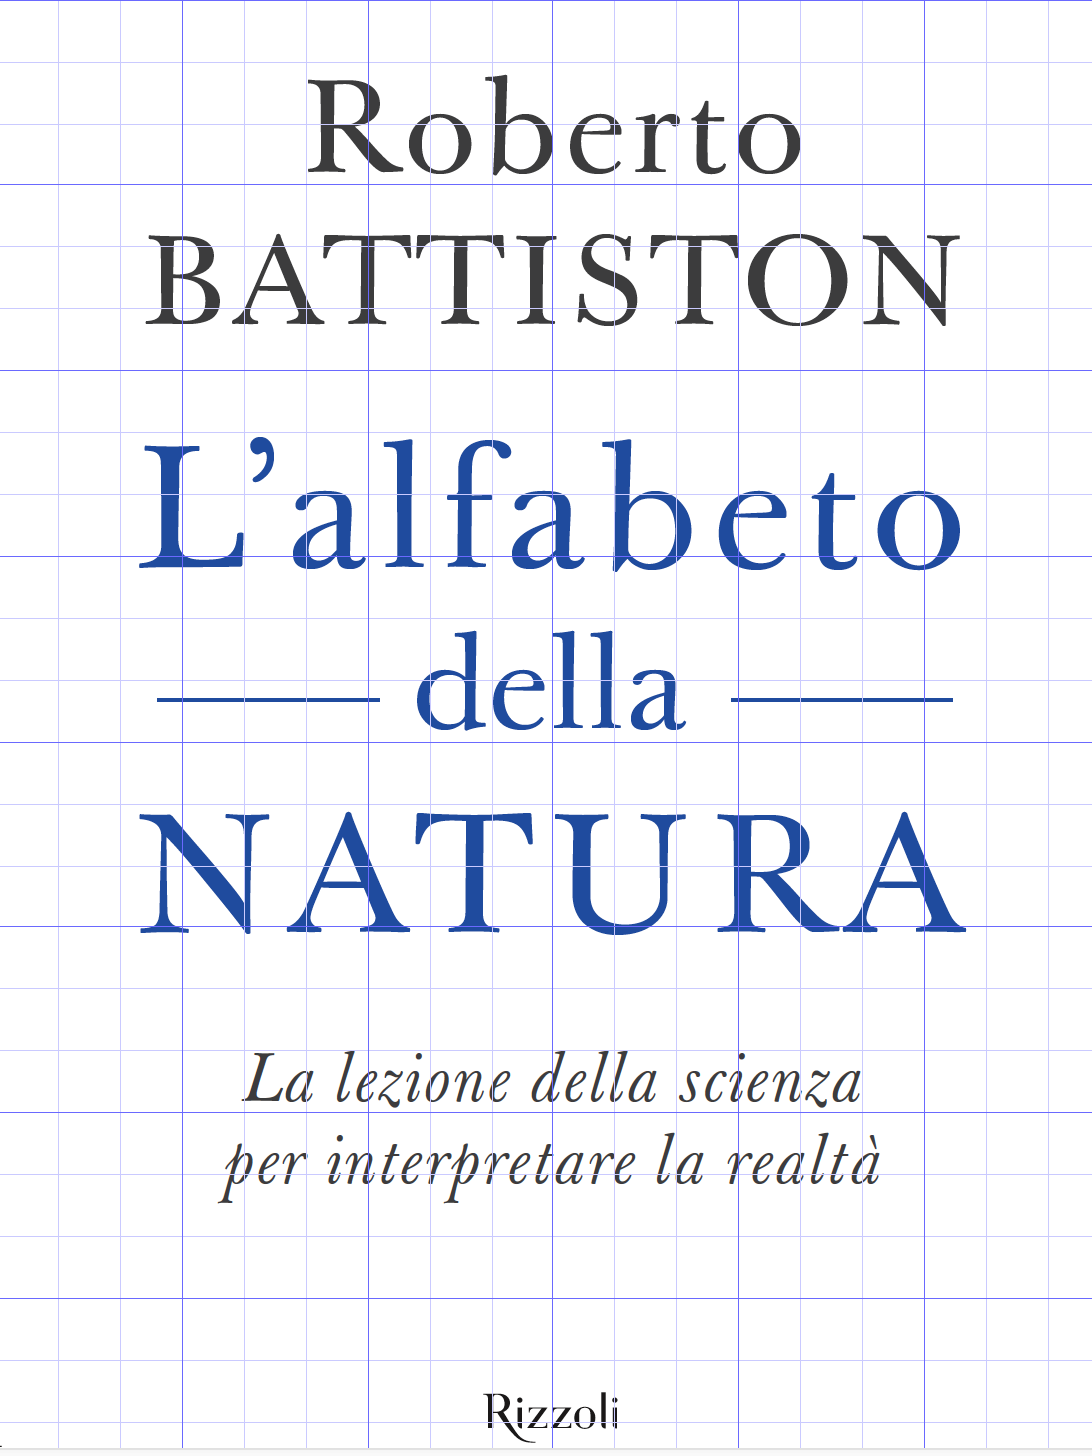 Roberto-Battiston-prima-alba-cosmo